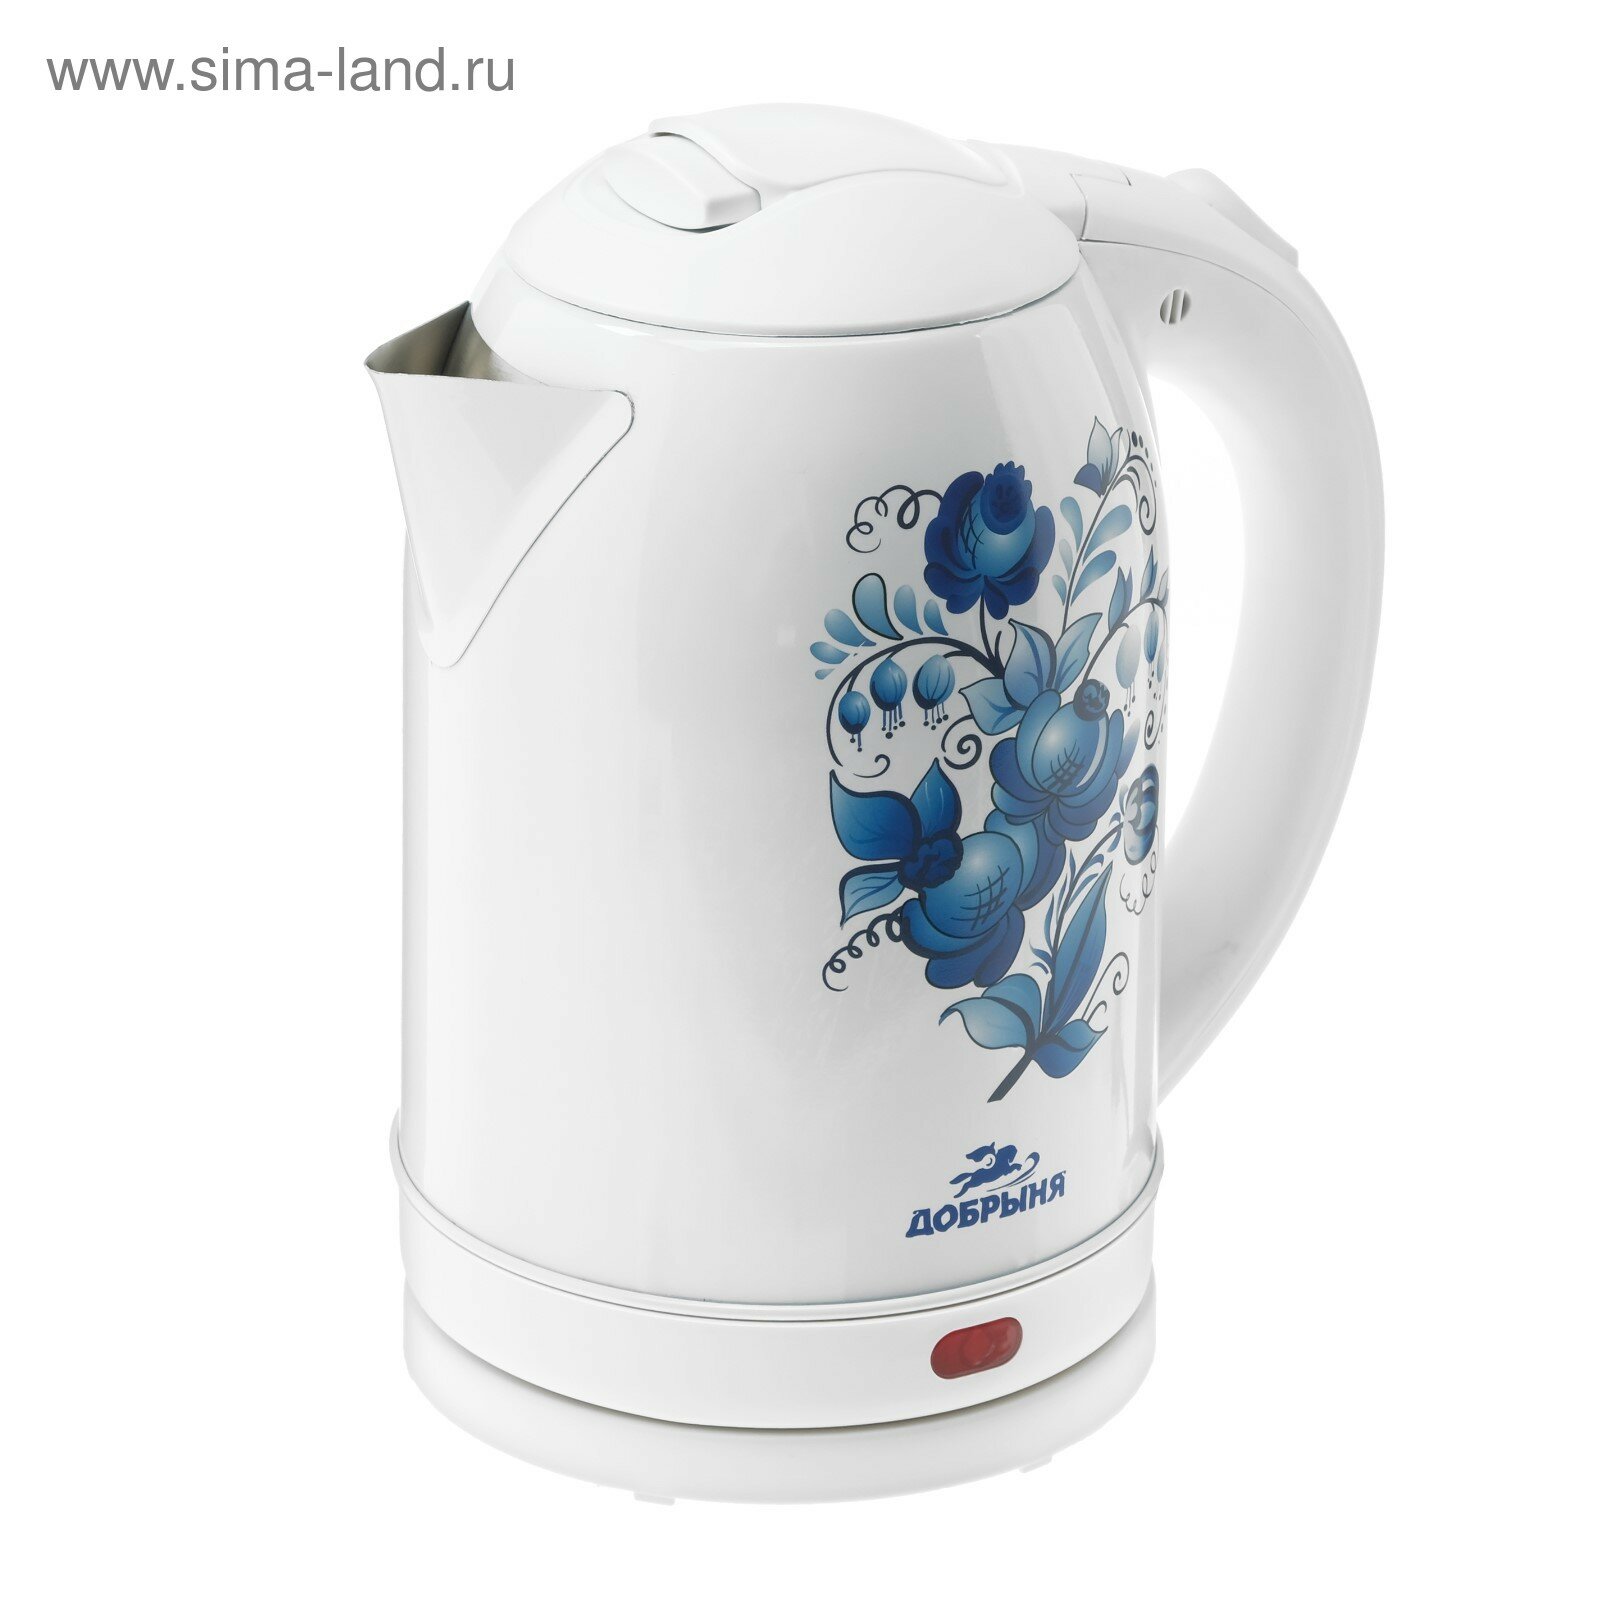 Чайник электрический DO-1214, металл, 2 л, 2000 Вт, белый с синими цветами